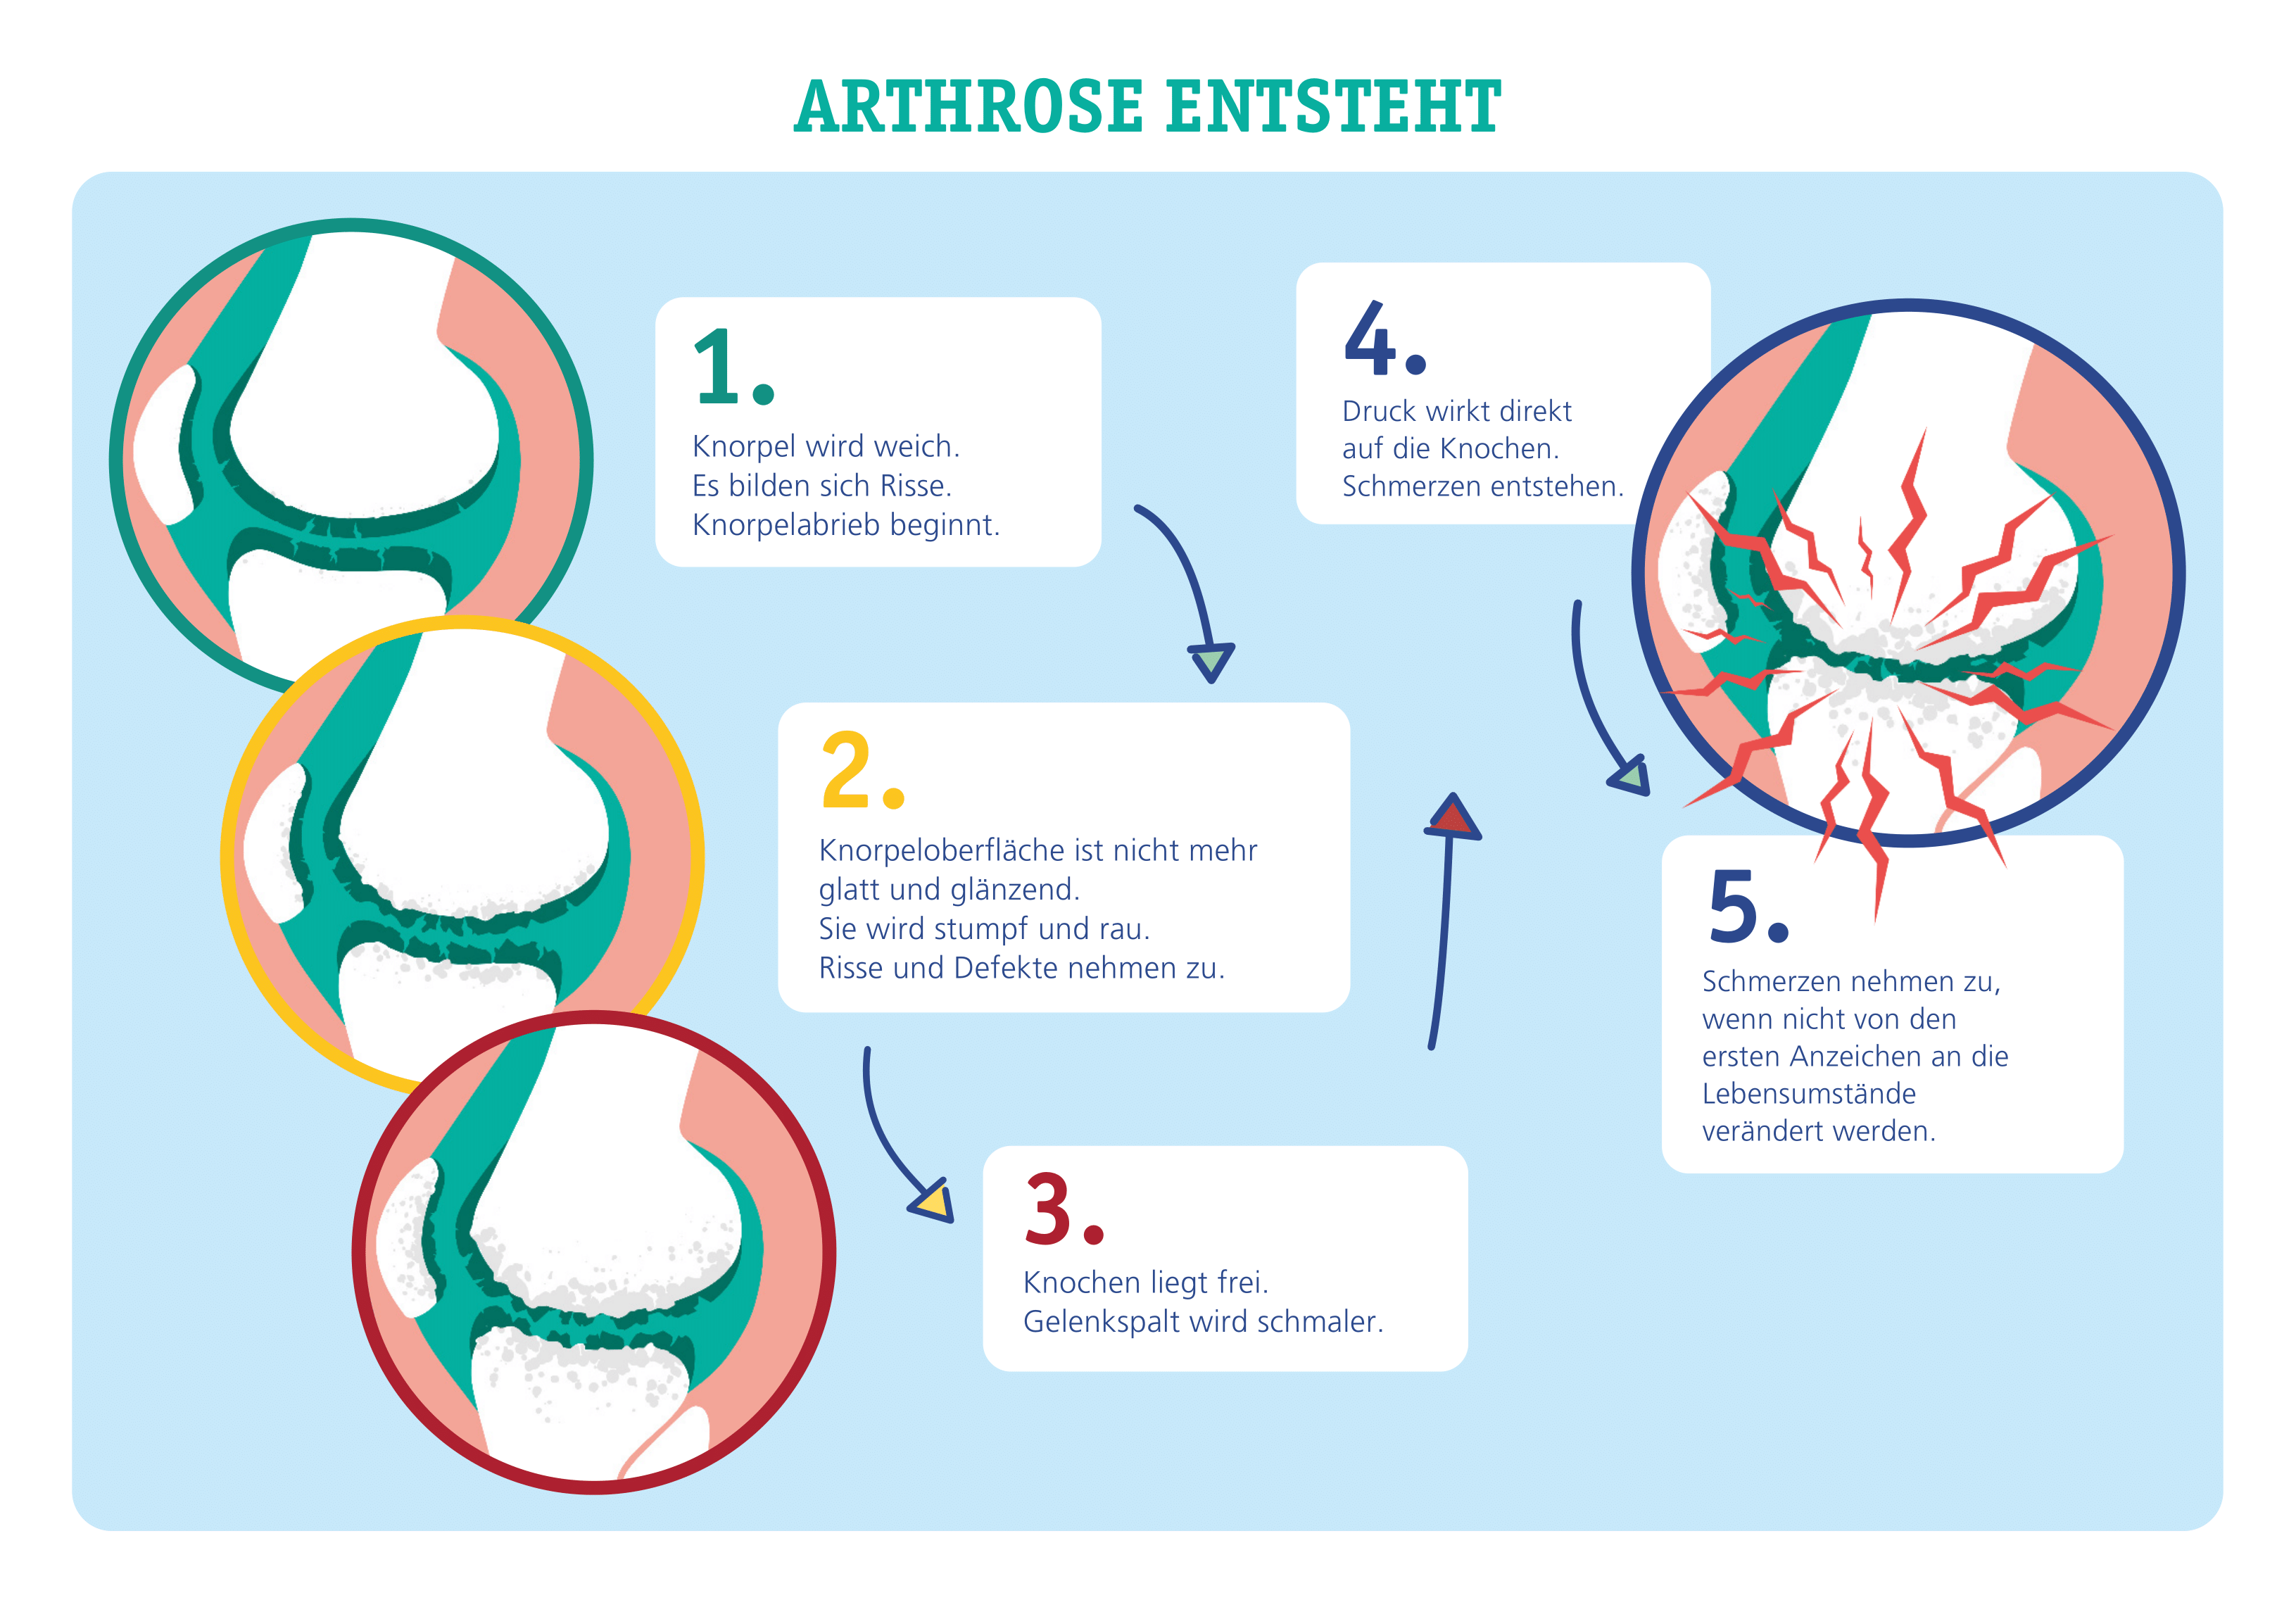 Arthrose: Behandlung und Symptome von Gelenkverschleiß